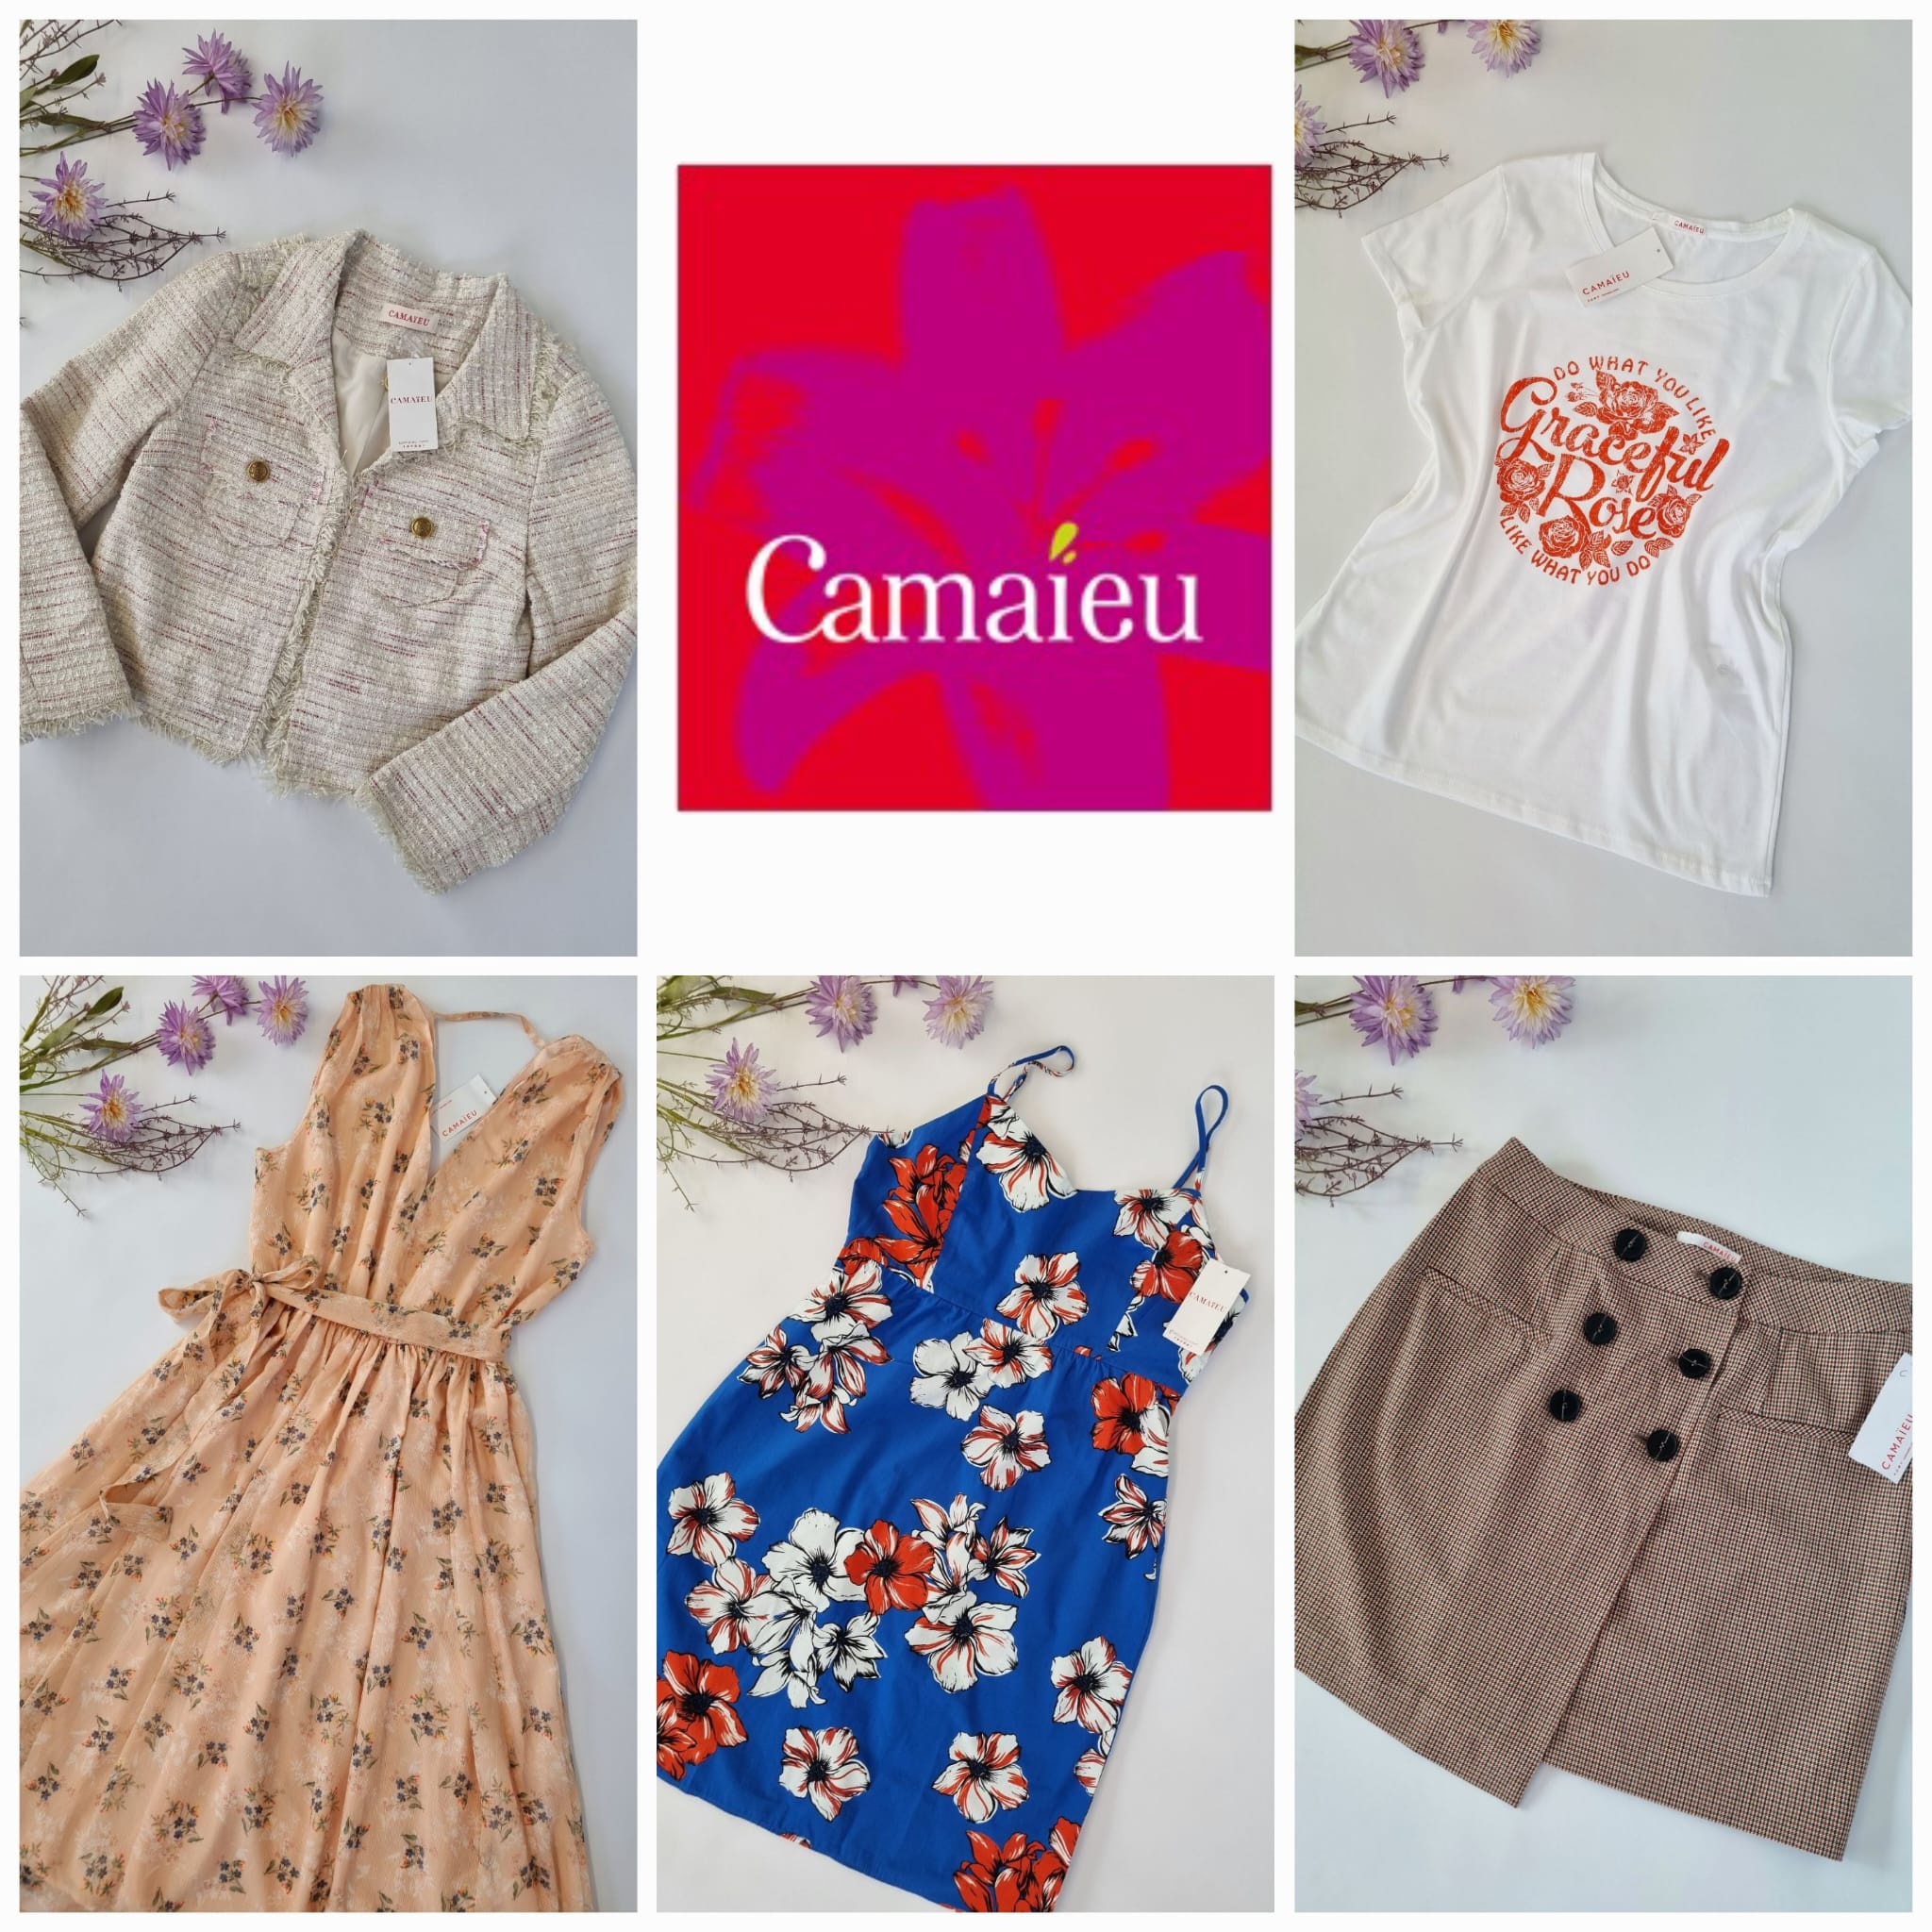 Women's clothing Camaieu